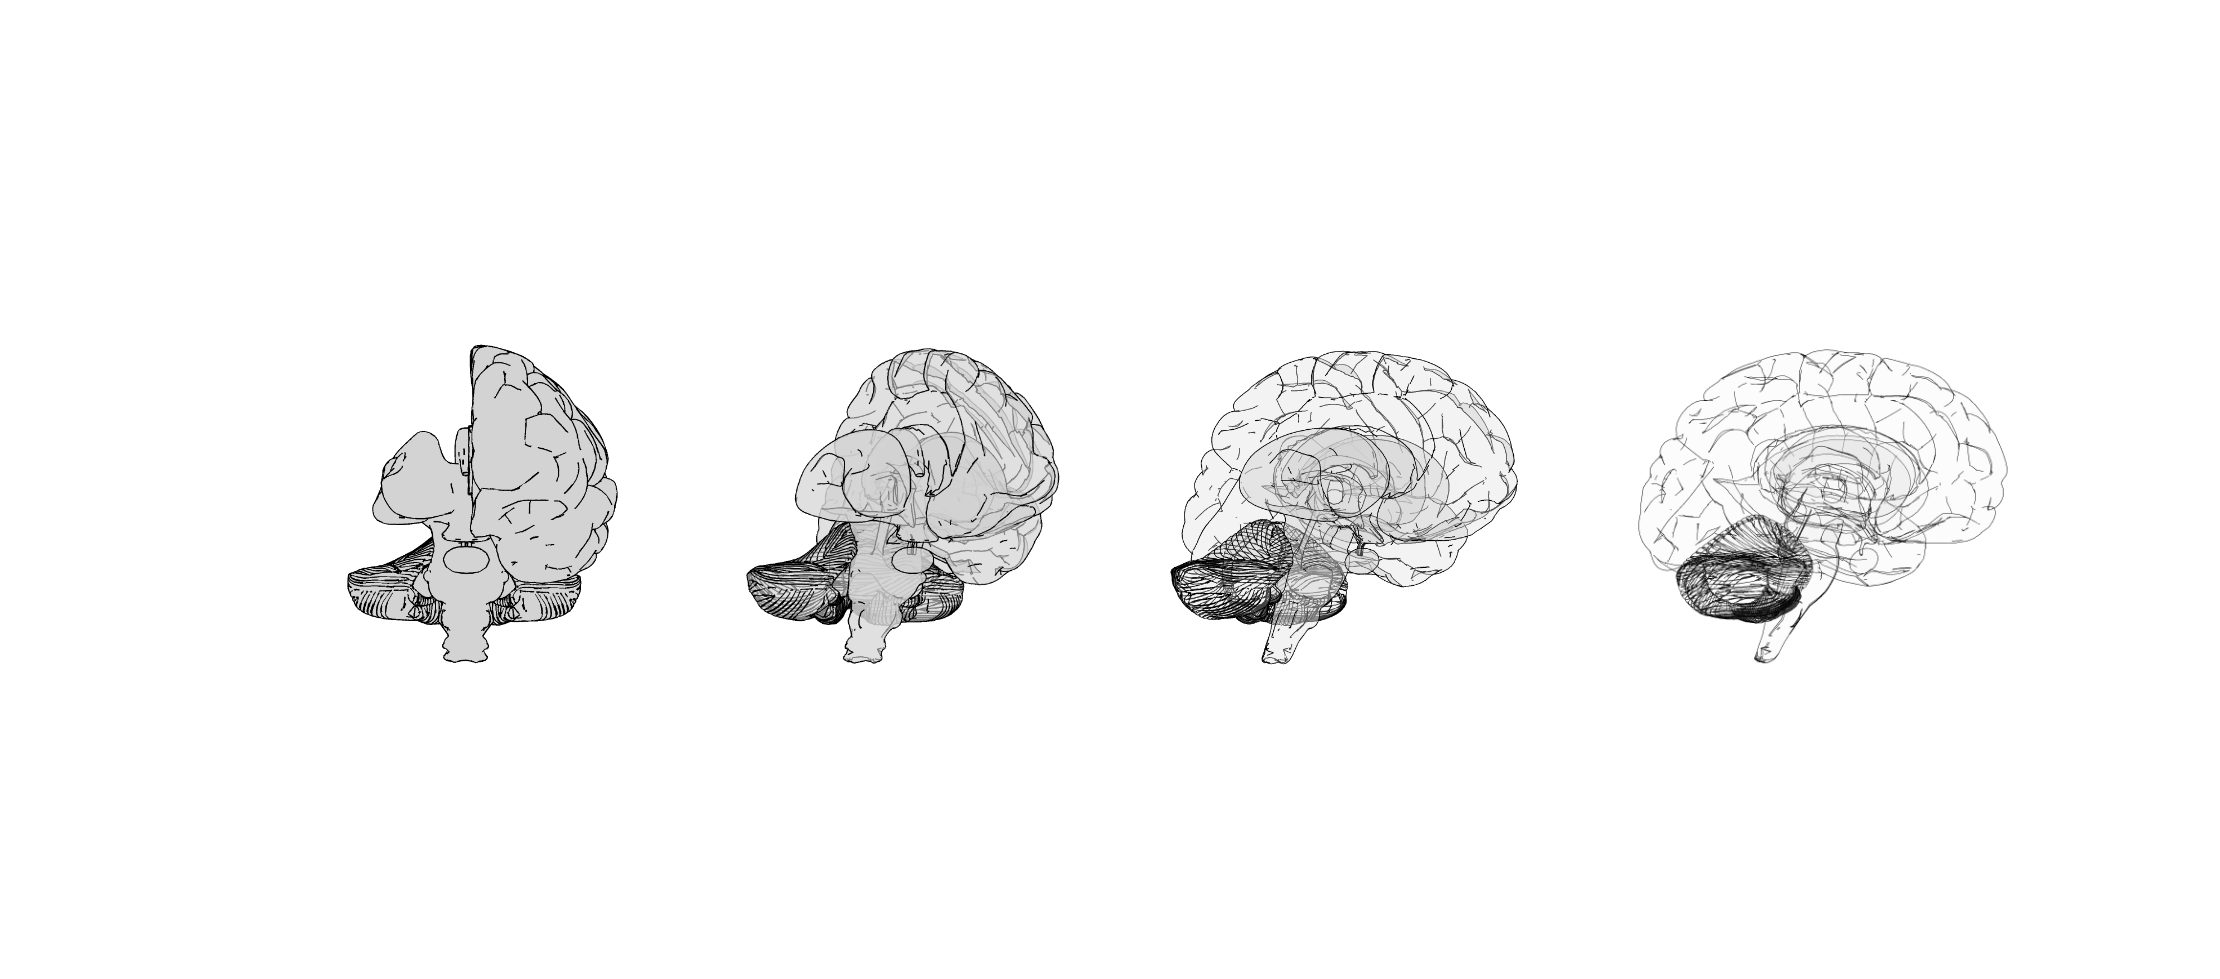 Human brain renderings